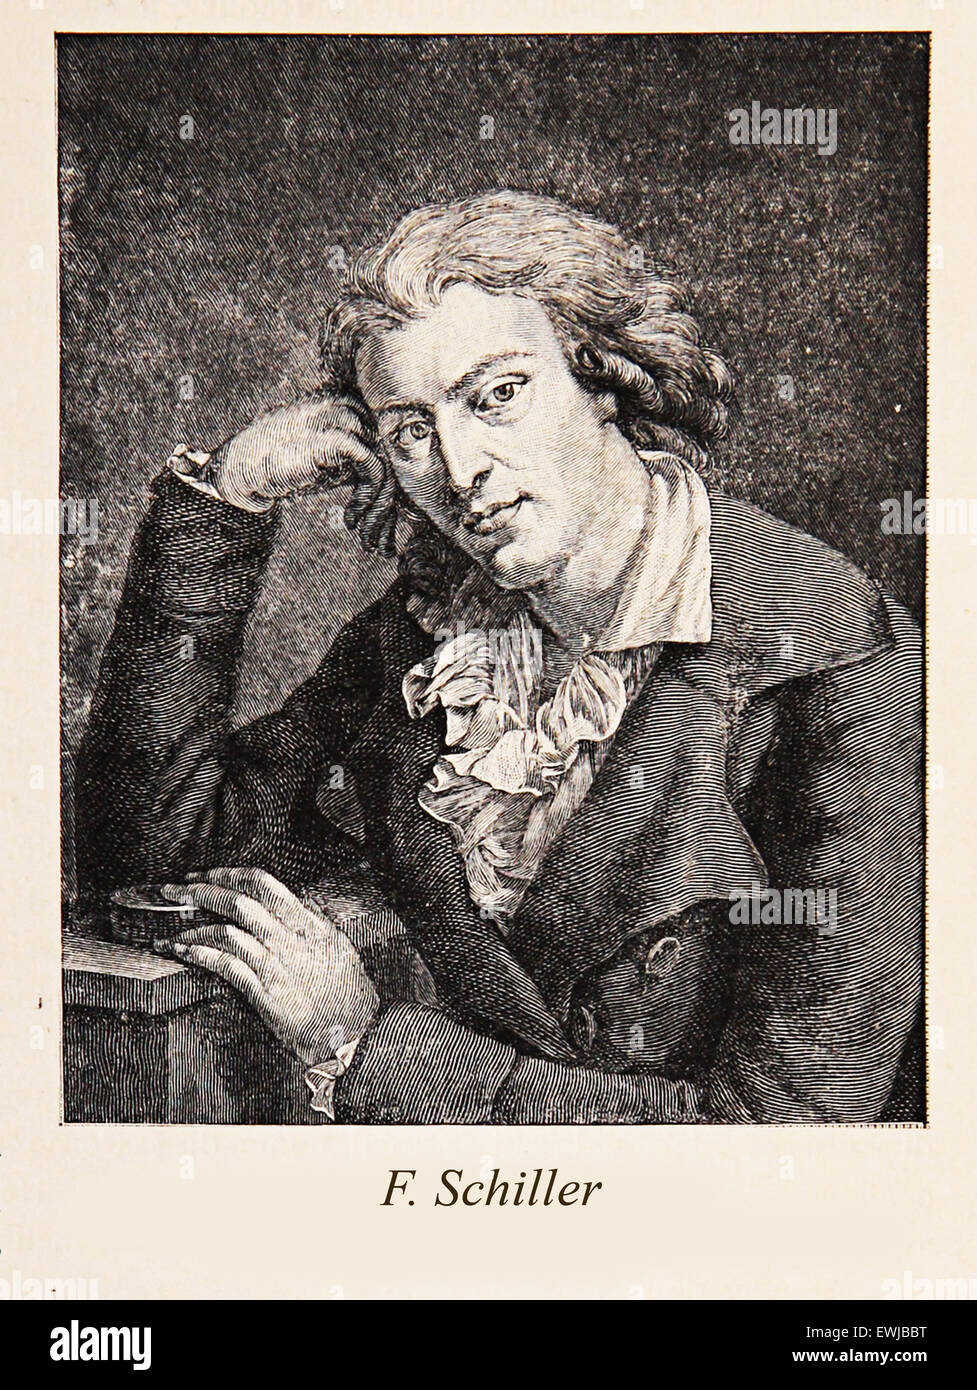 Gravure/portrait de Johann Christoph Friedrich von Schiller : allemand du xixe siècle, poète, philosophe, historien et dramaturge ; l'une des plus célèbres figures de la littérature allemande Banque D'Images